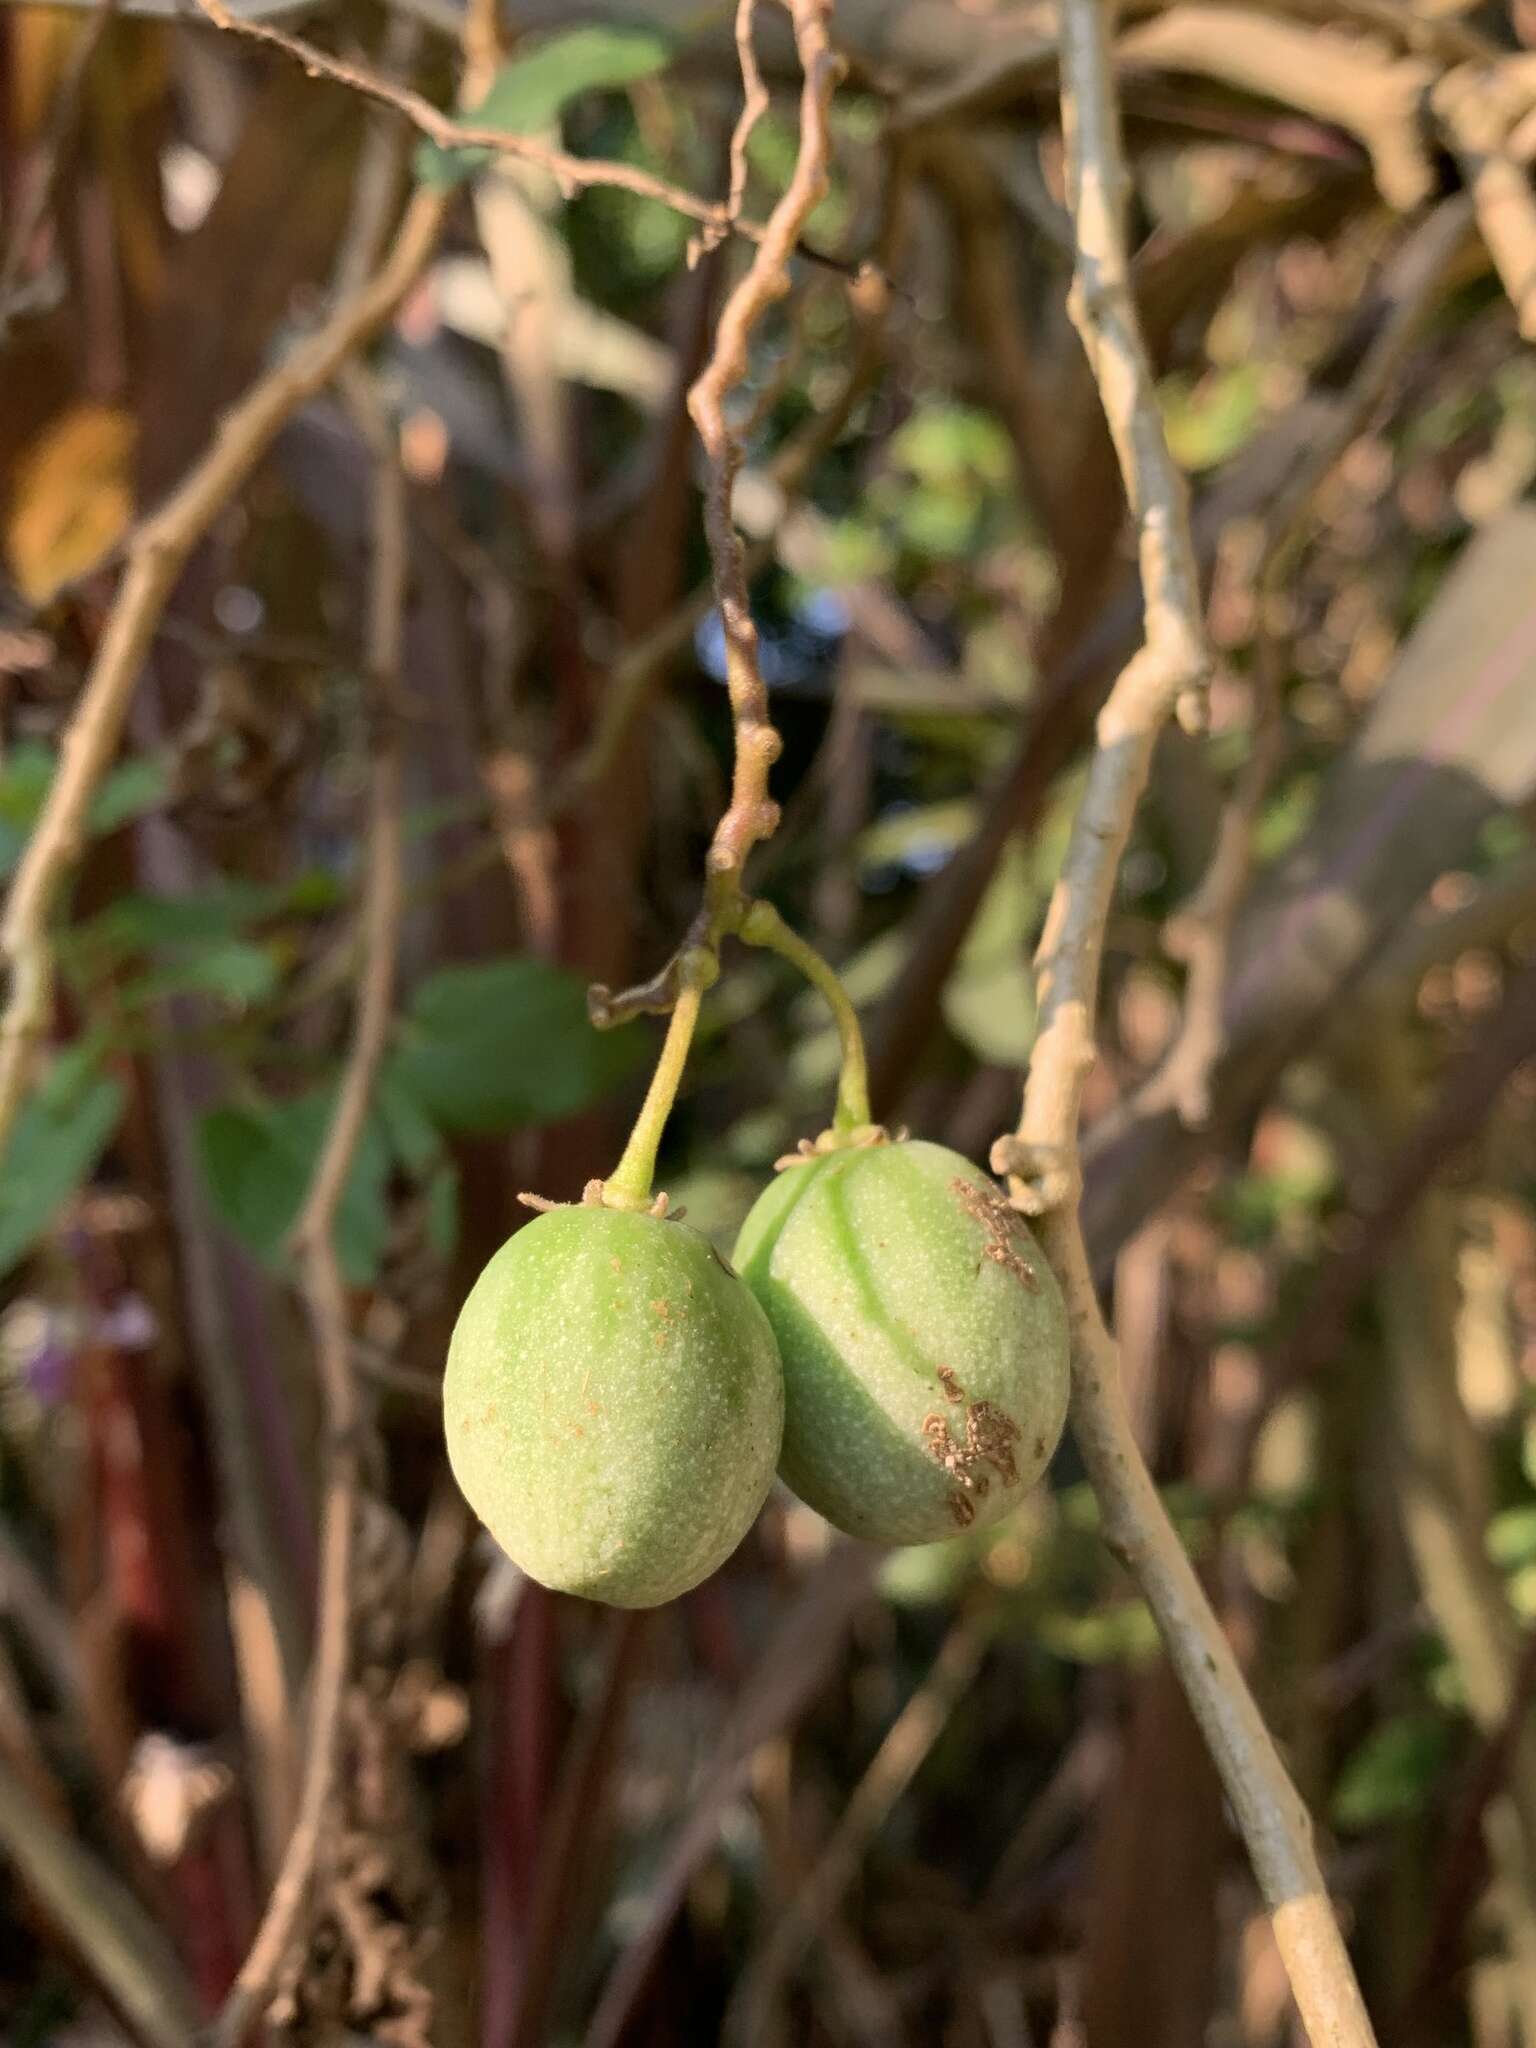 Image of Solanum pelagicum Bohs